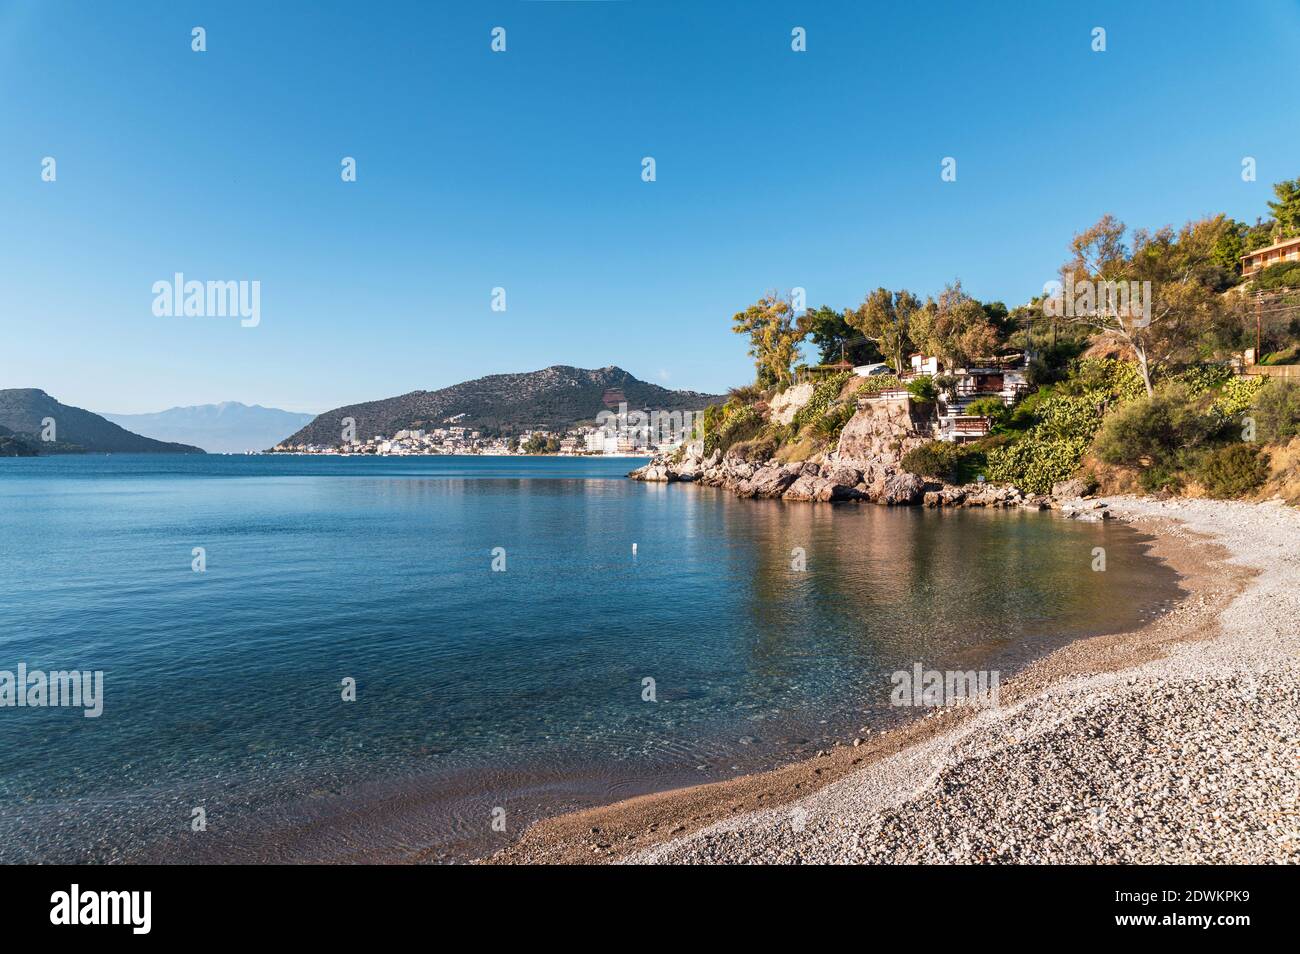 Calm beach near Tolo, Greece Stock Photo